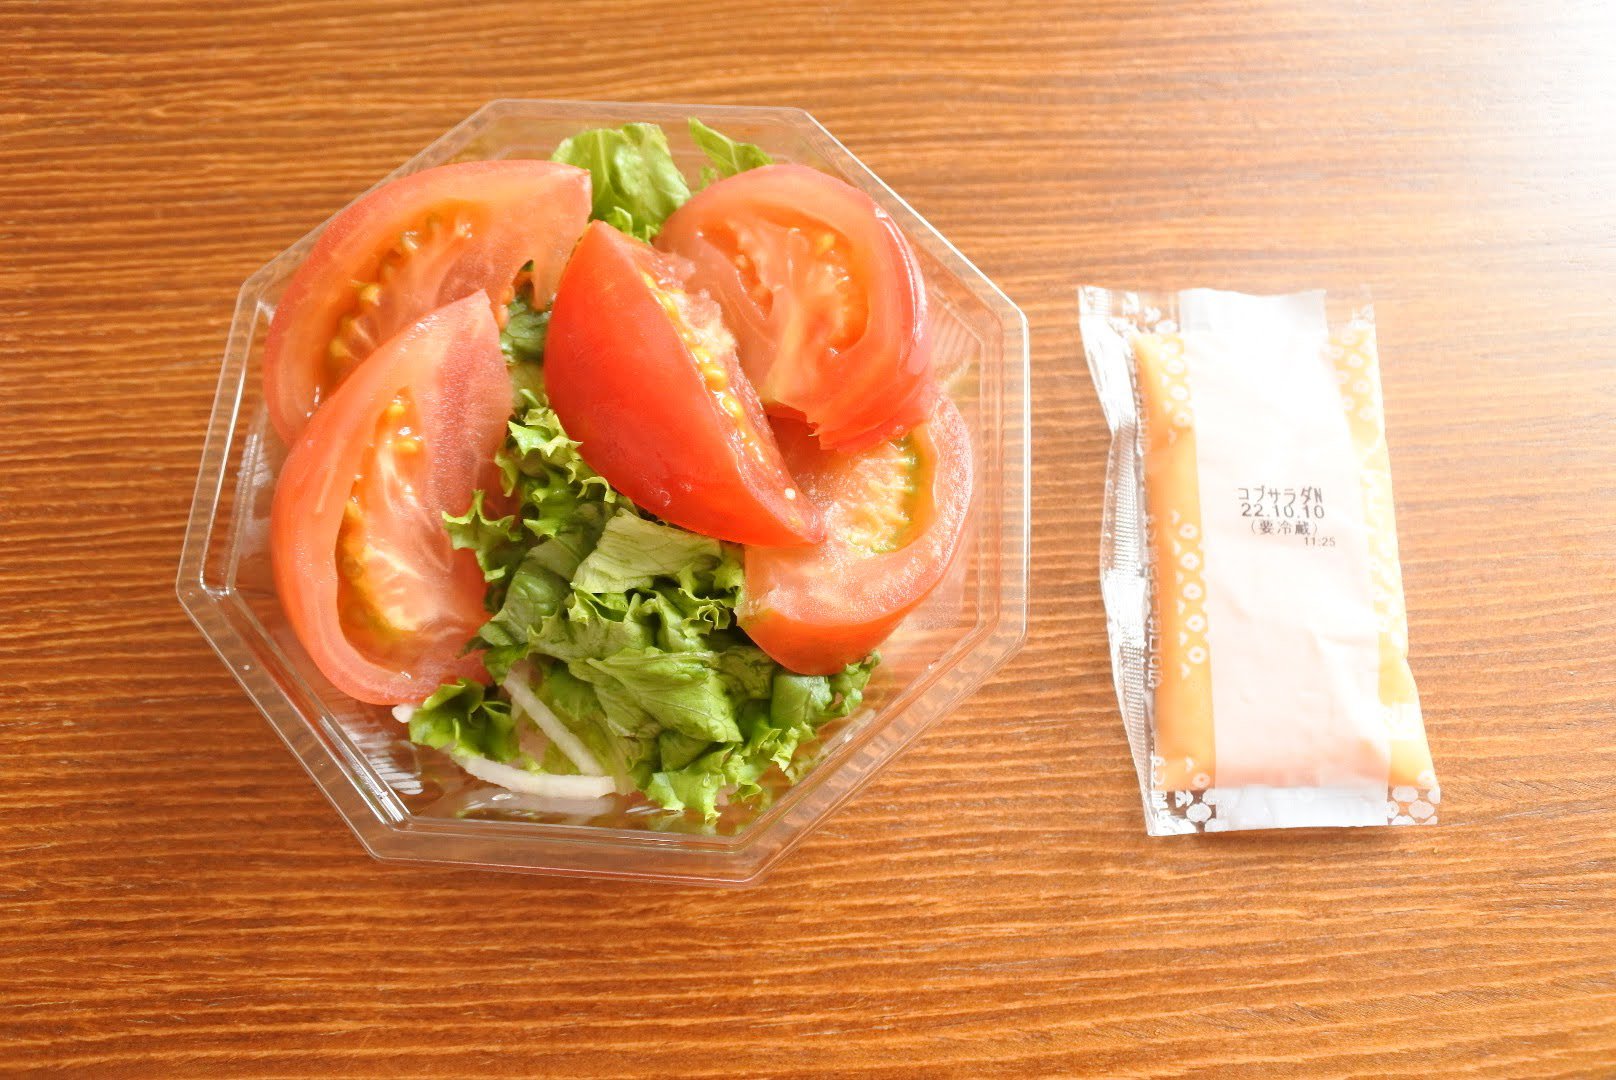 セコマ夏のお惣菜トマト開封